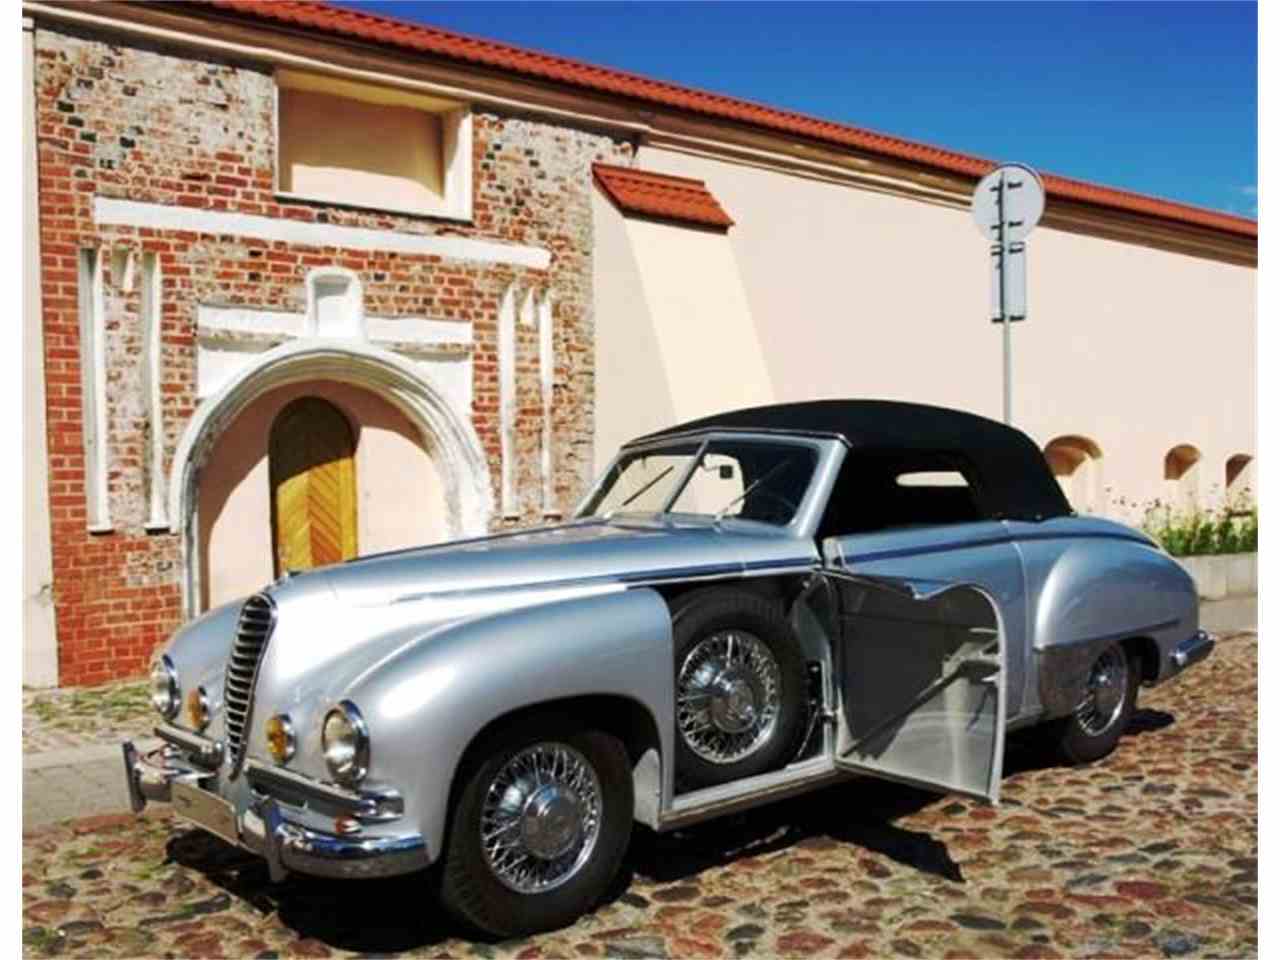 High Resolution Wallpaper | 1940 Mercedes Benz 1280x960 px